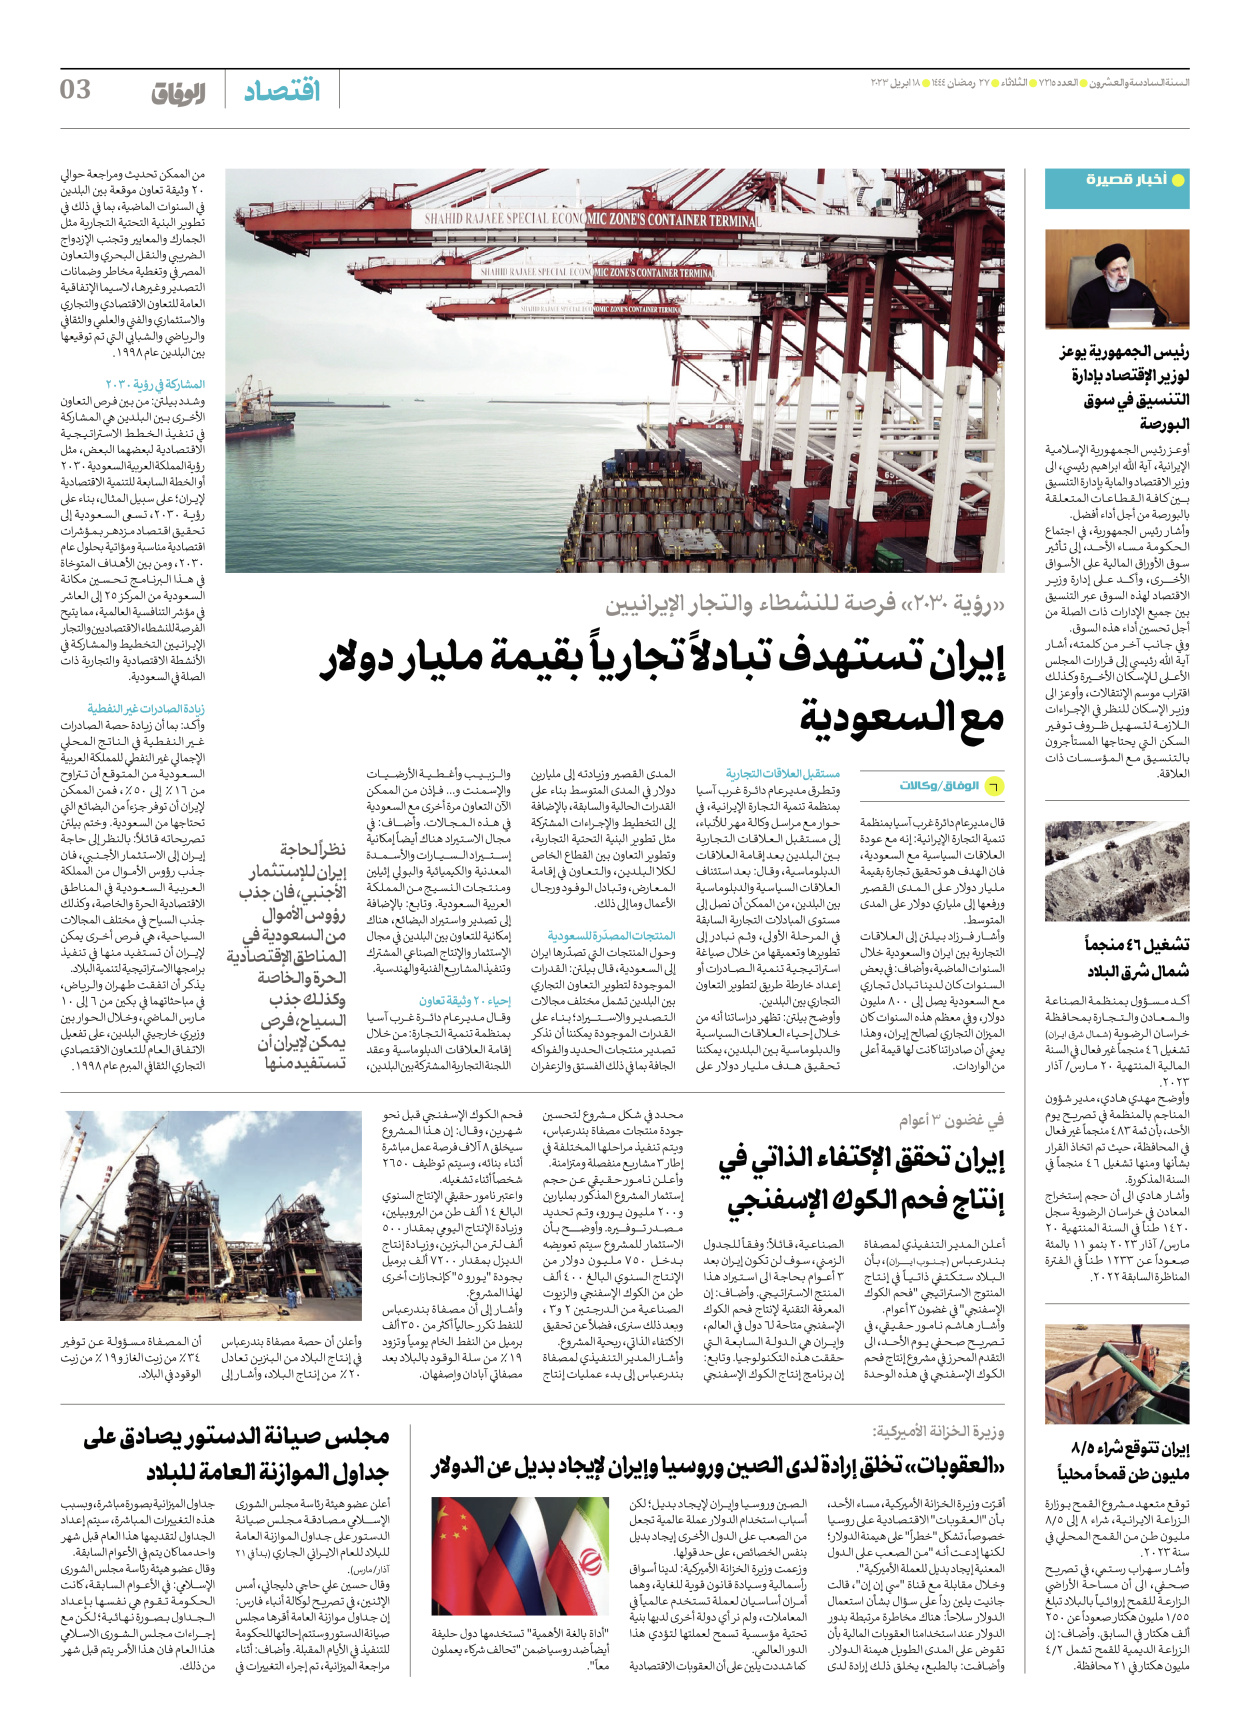 صحیفة ایران الدولیة الوفاق - العدد سبعة آلاف ومائتان وخمسة عشر - ١٨ أبريل ٢٠٢٣ - الصفحة ۳